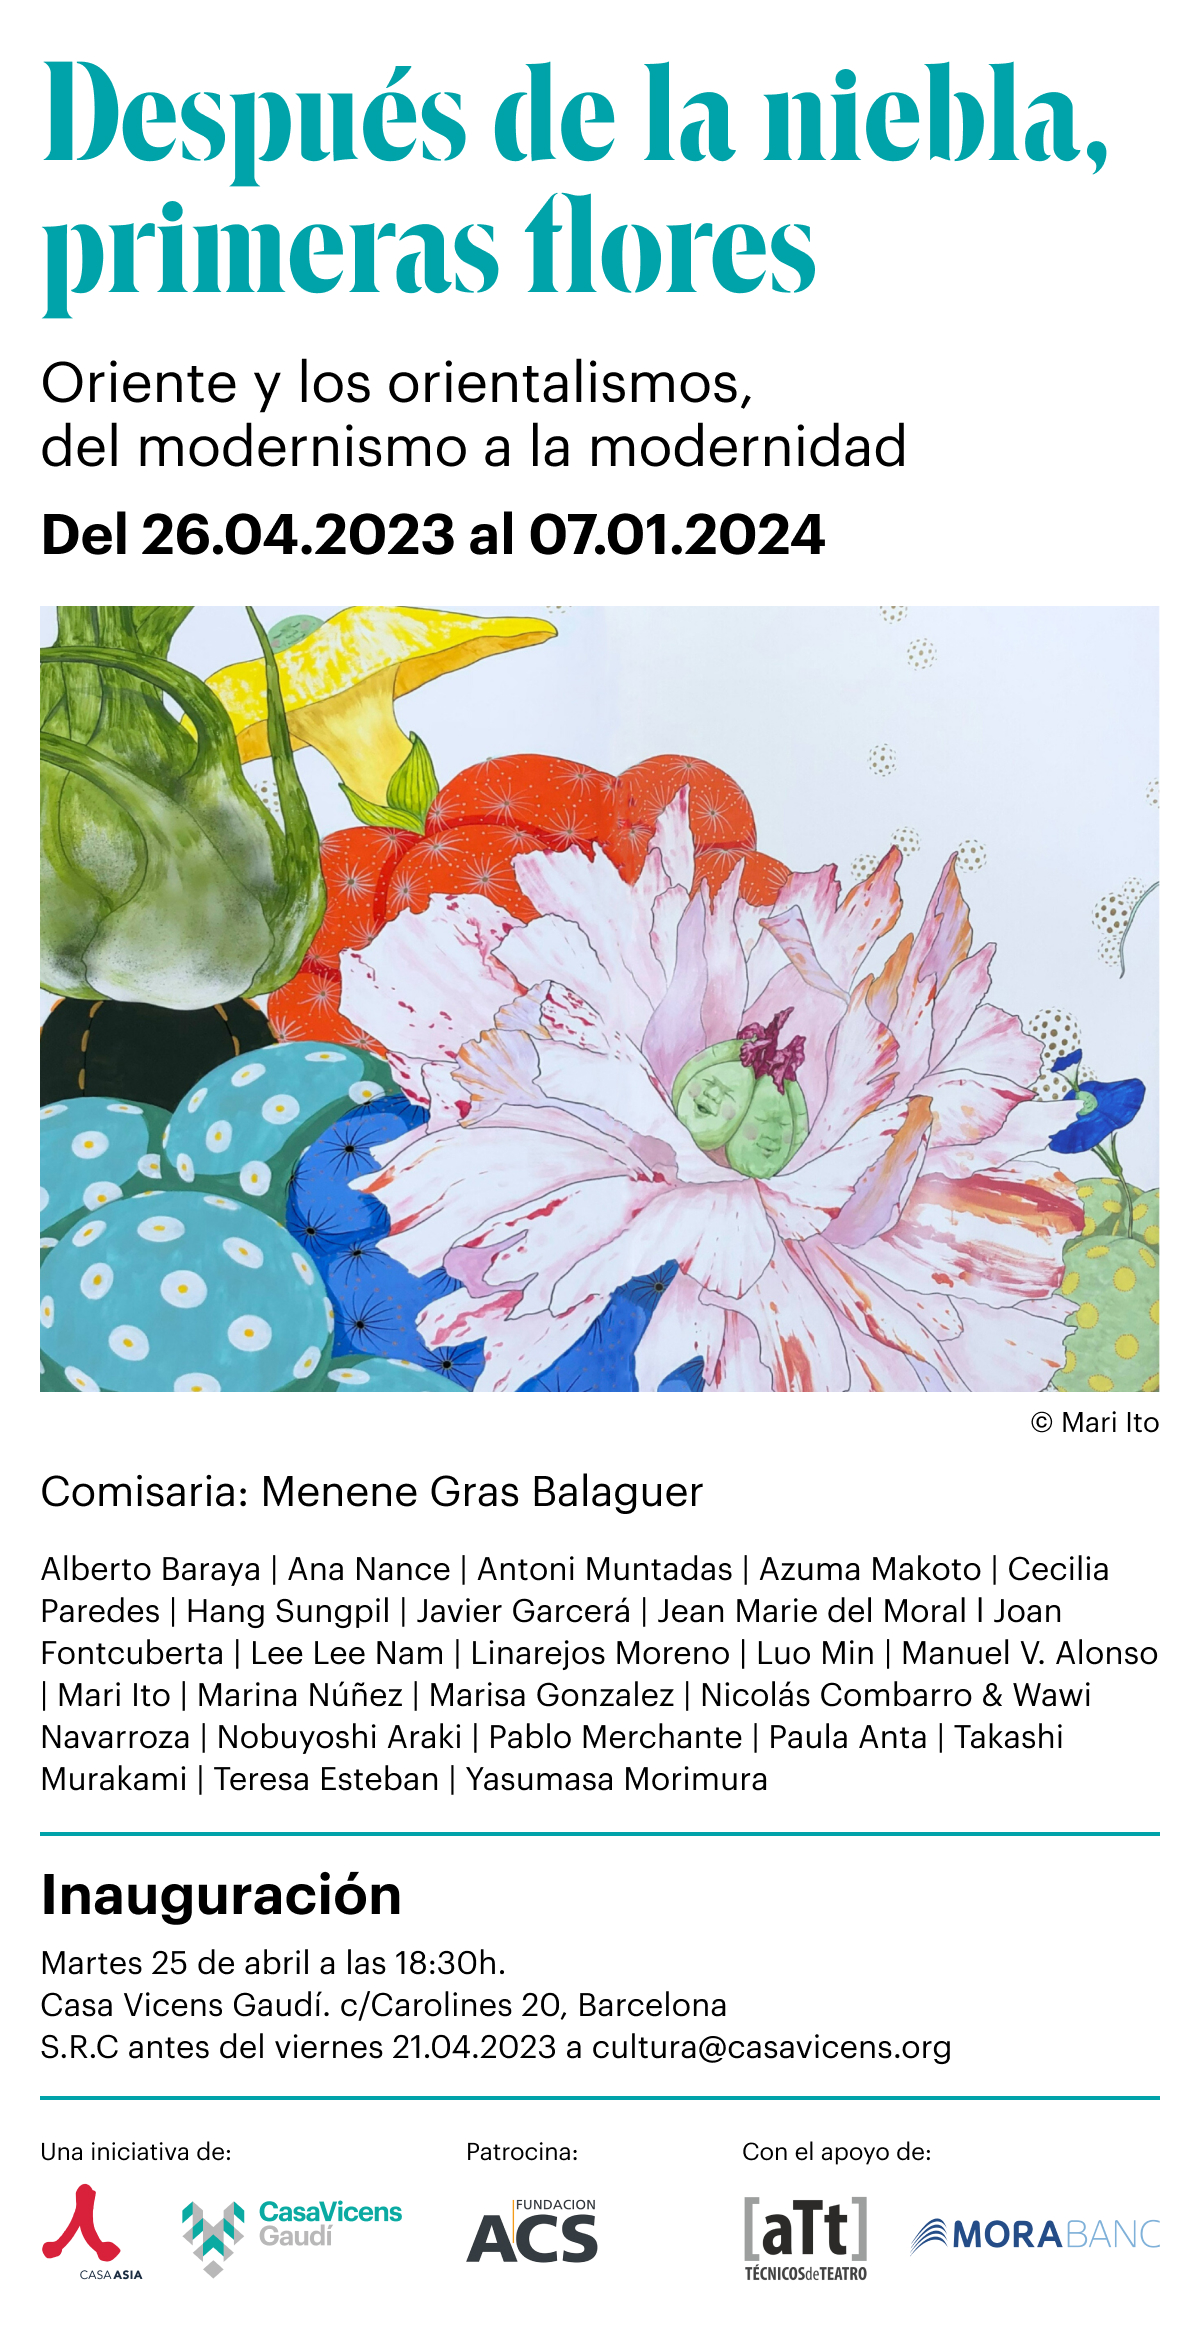 Marisa González | Próxima exposición colectiva en Casa Vicens comisariada por Menene Gras Balaguer